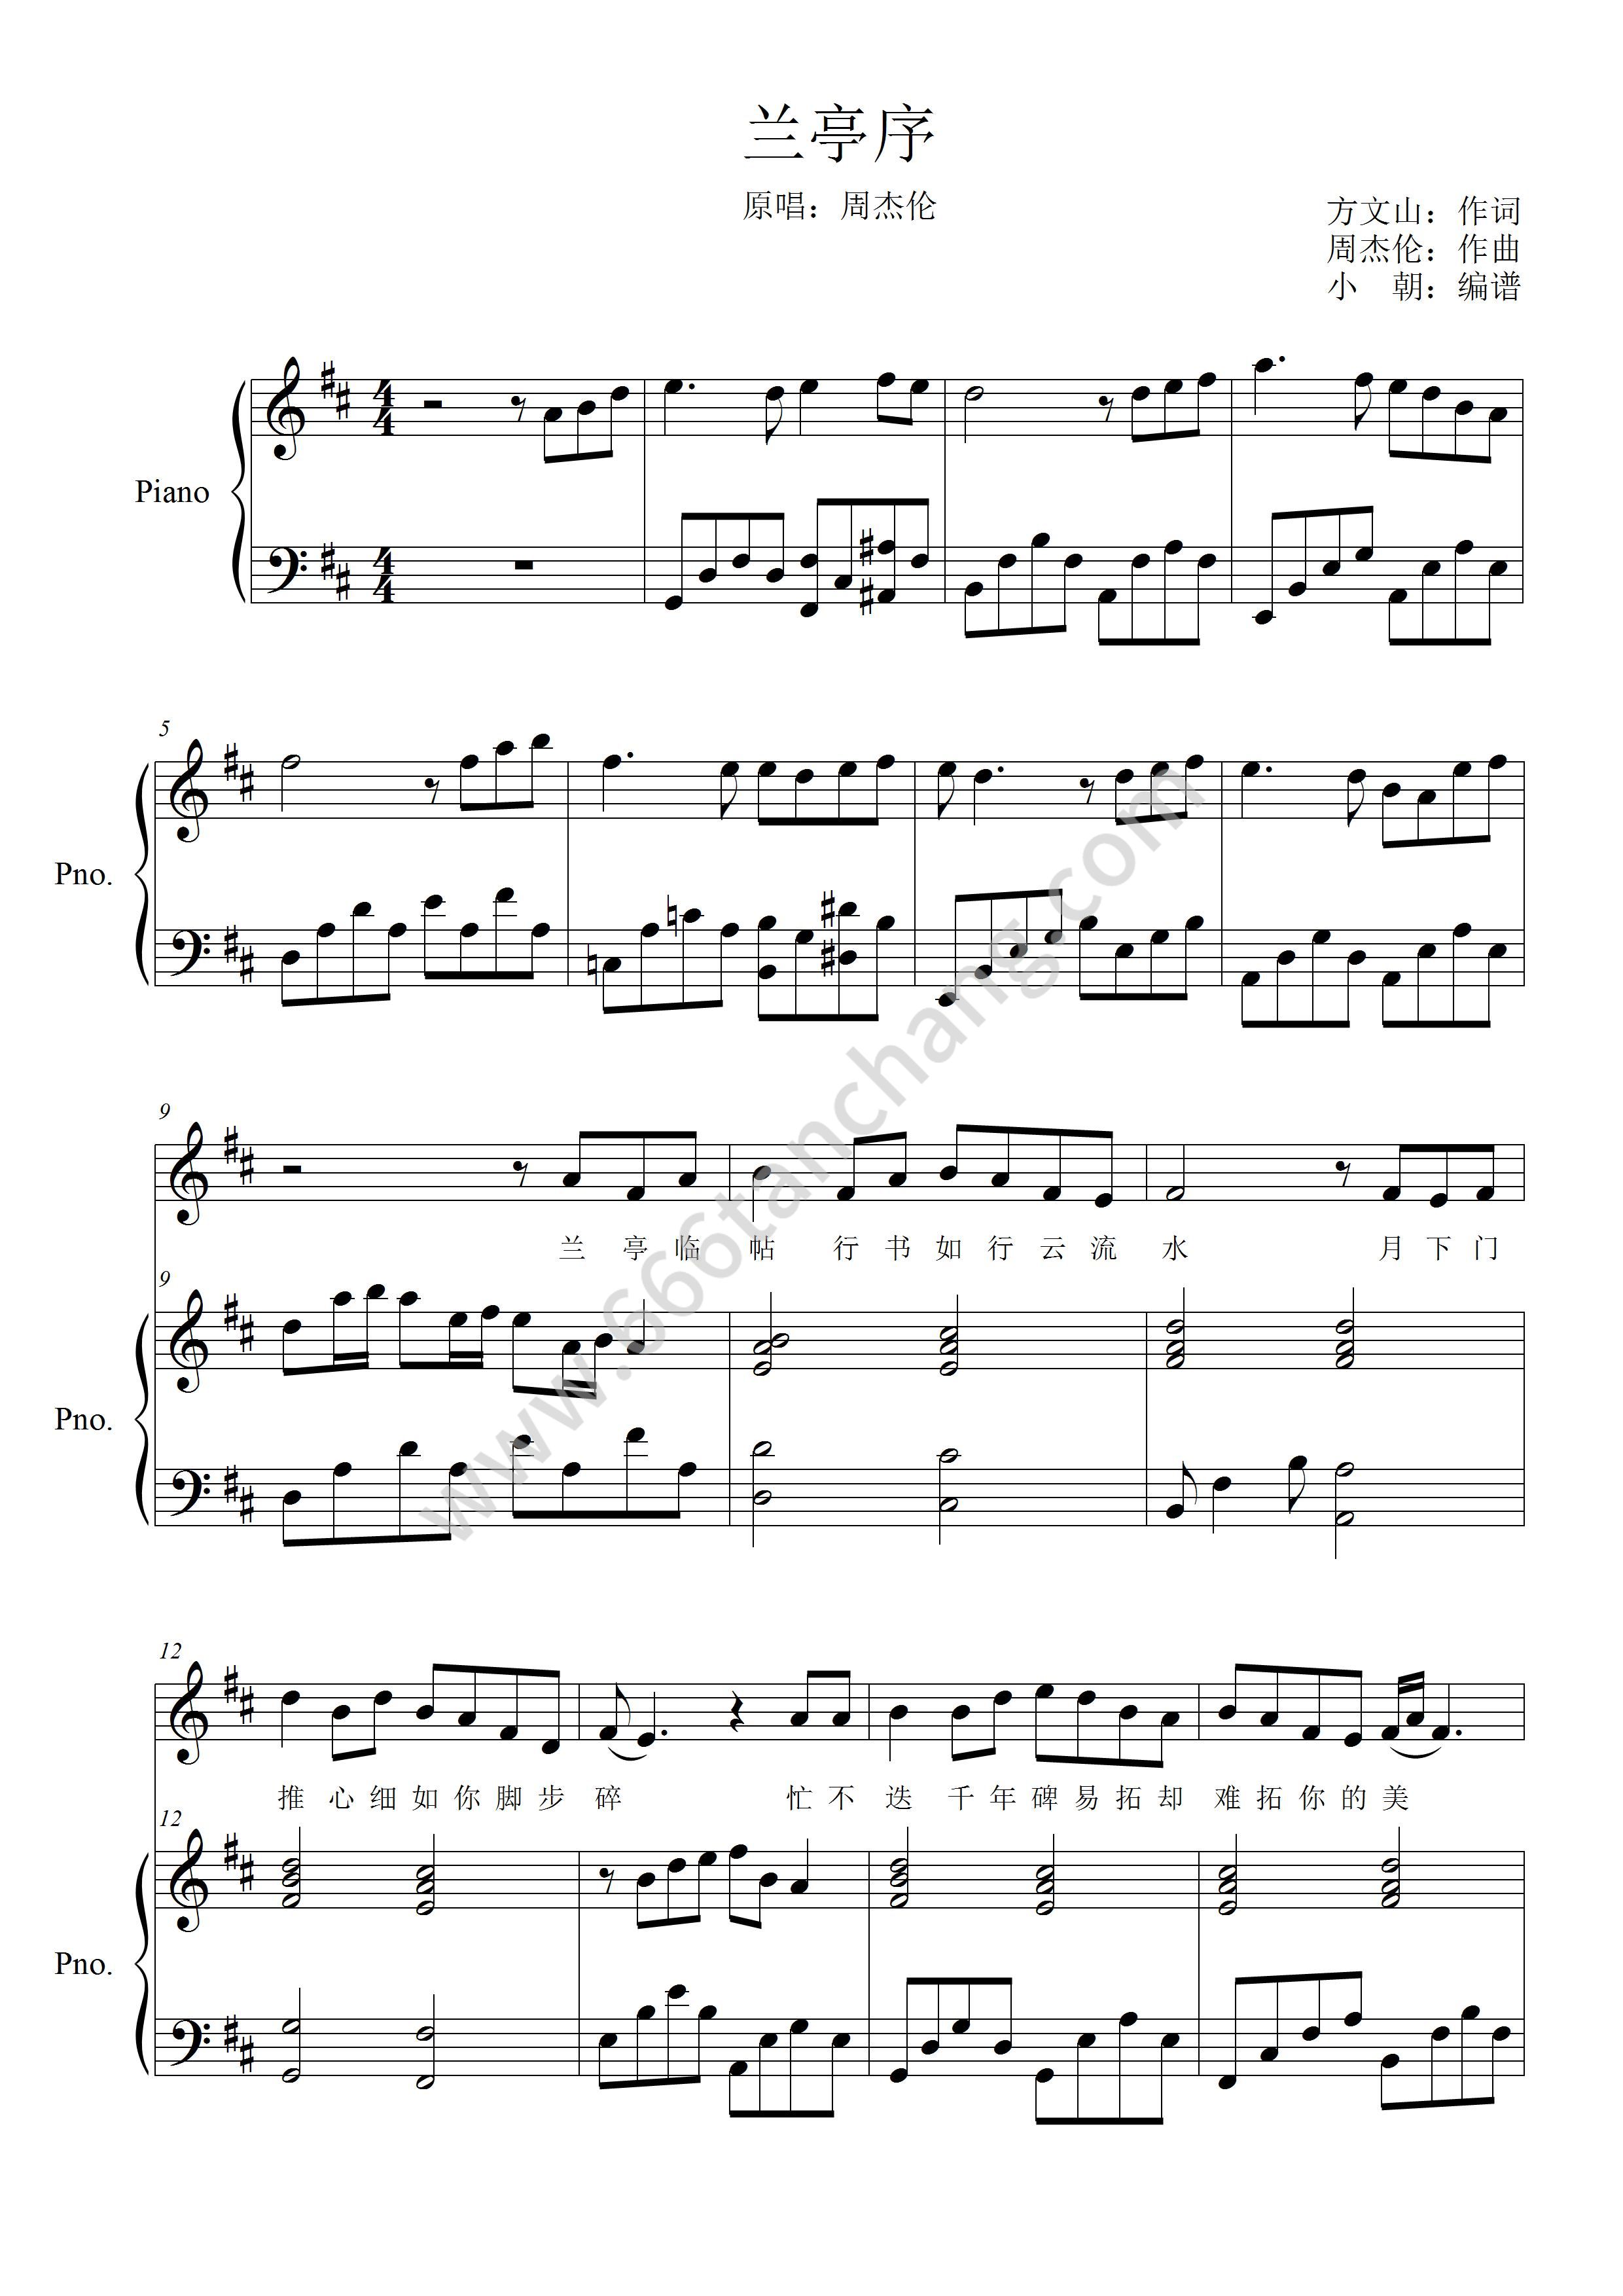 夜的钢琴曲 1五线谱预览1-钢琴谱文件（五线谱、双手简谱、数字谱、Midi、PDF）免费下载